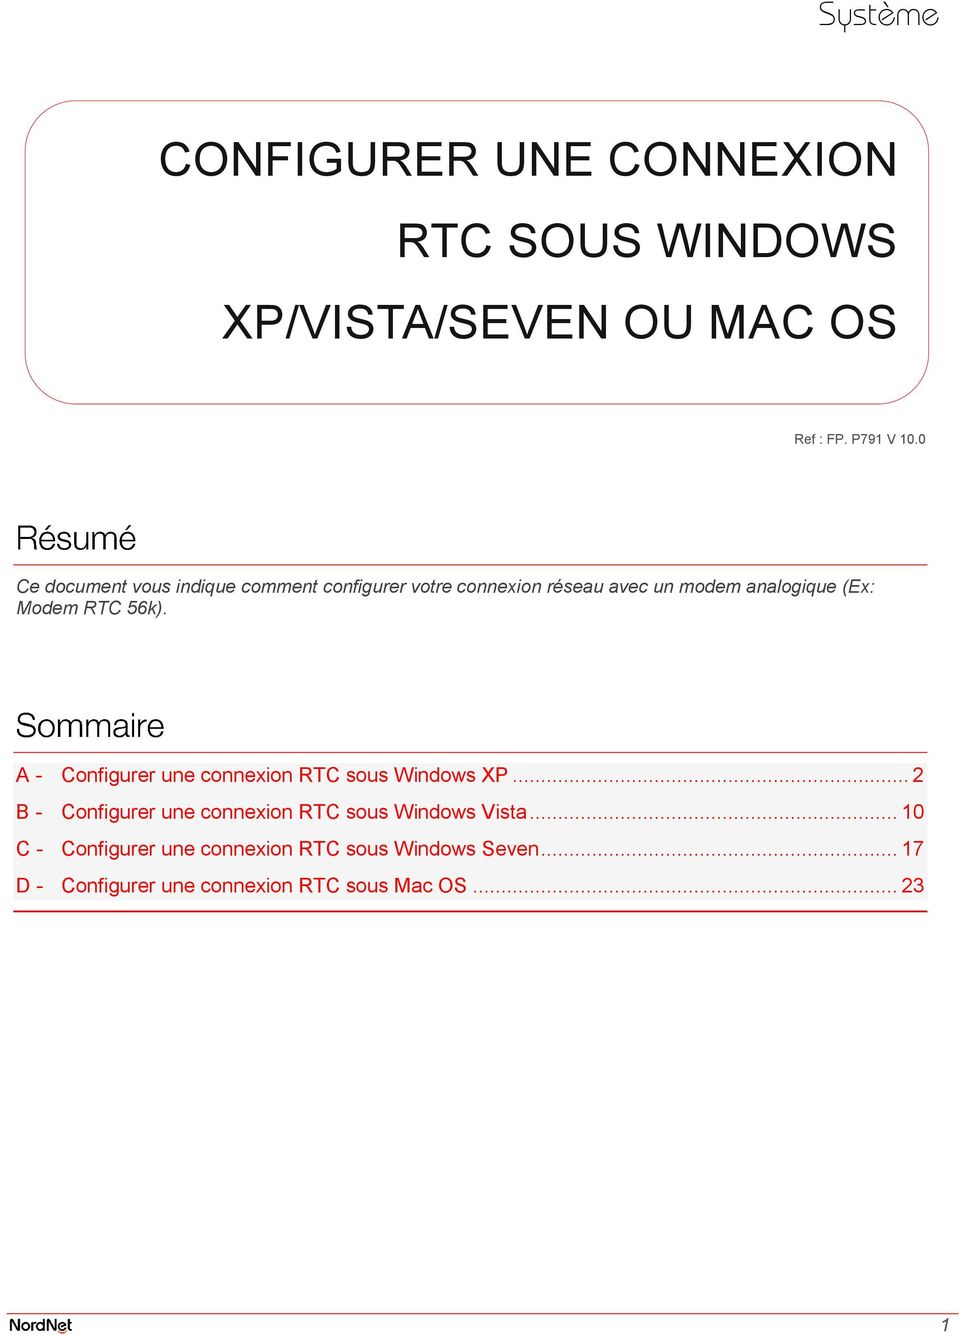 A - Configurer une connexion RTC sous Windows XP... 2 B - Configurer une connexion RTC sous Windows Vista.